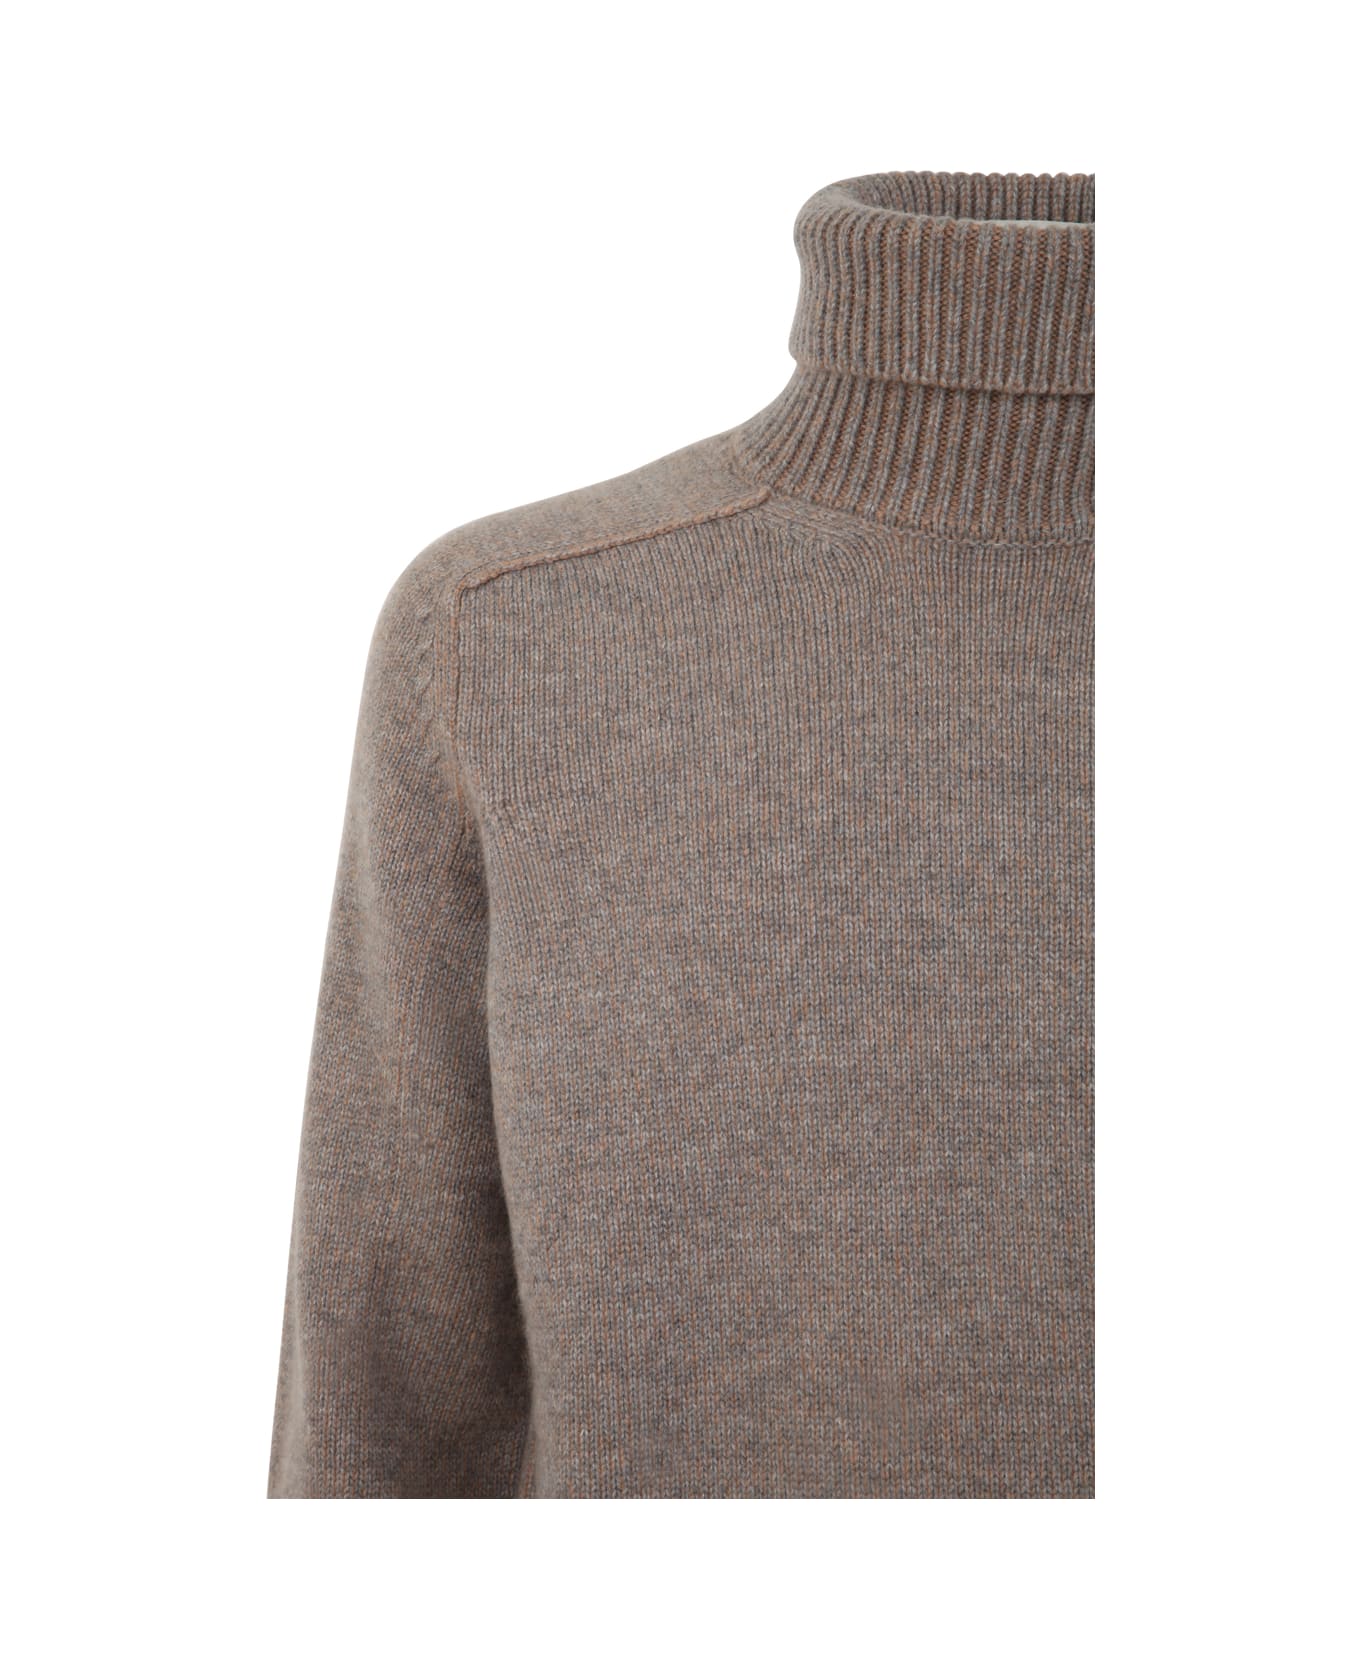 Zegna Oasi Cashmere Turtleneck Sweater - Beige ニットウェア